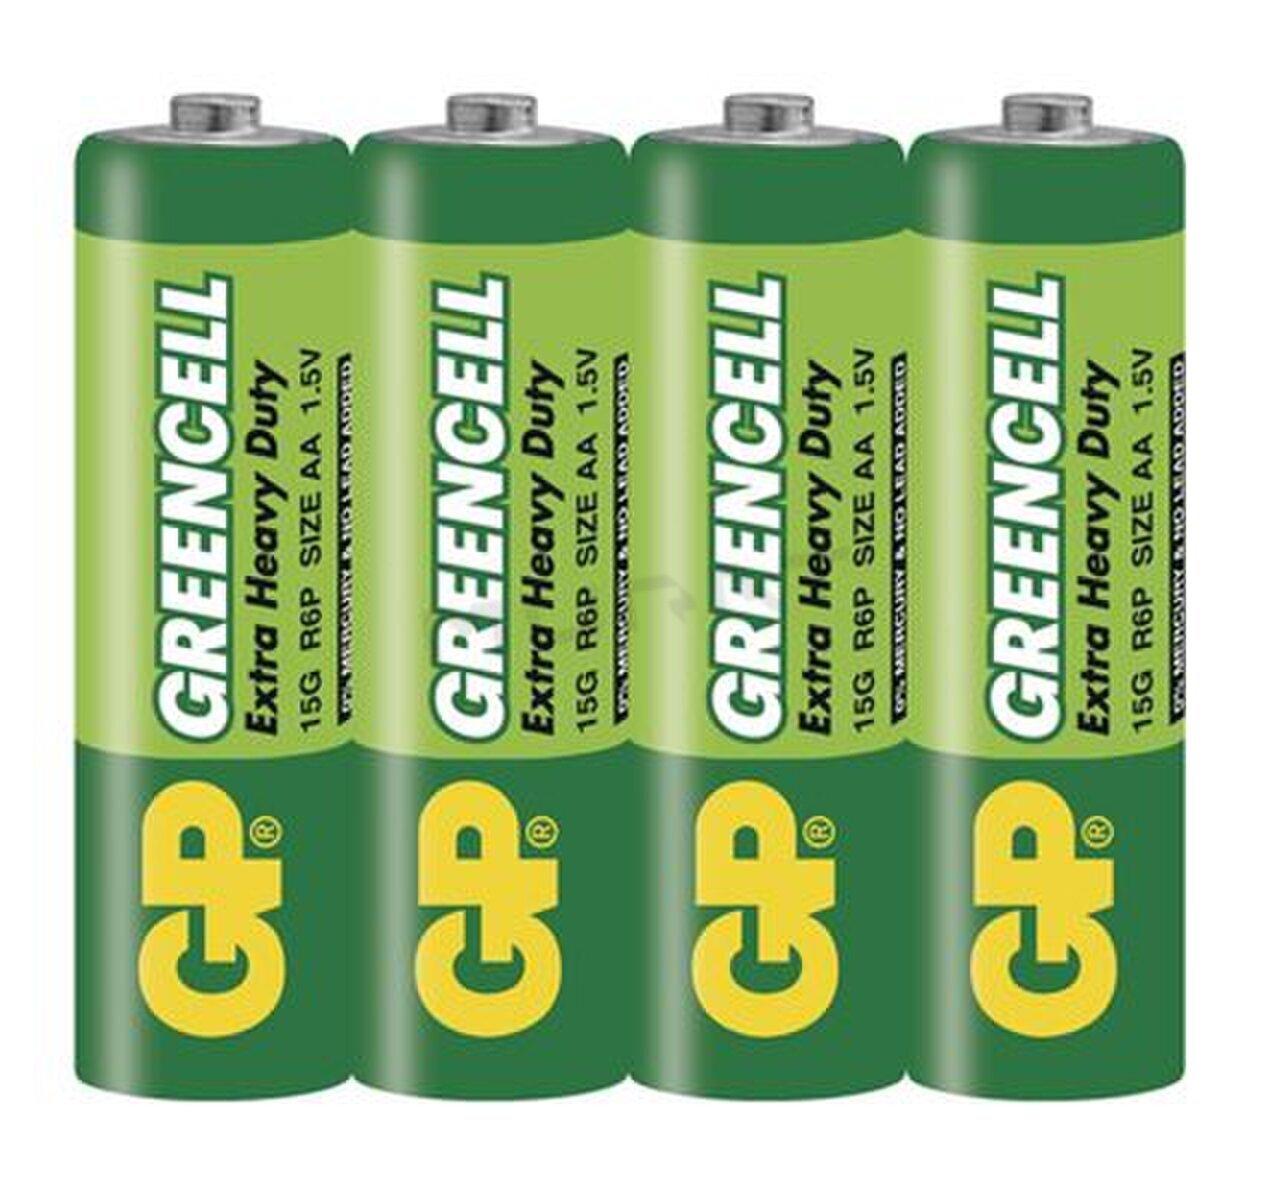 Batéria R06 1,5V GP B1220 folia Greencell 4ks